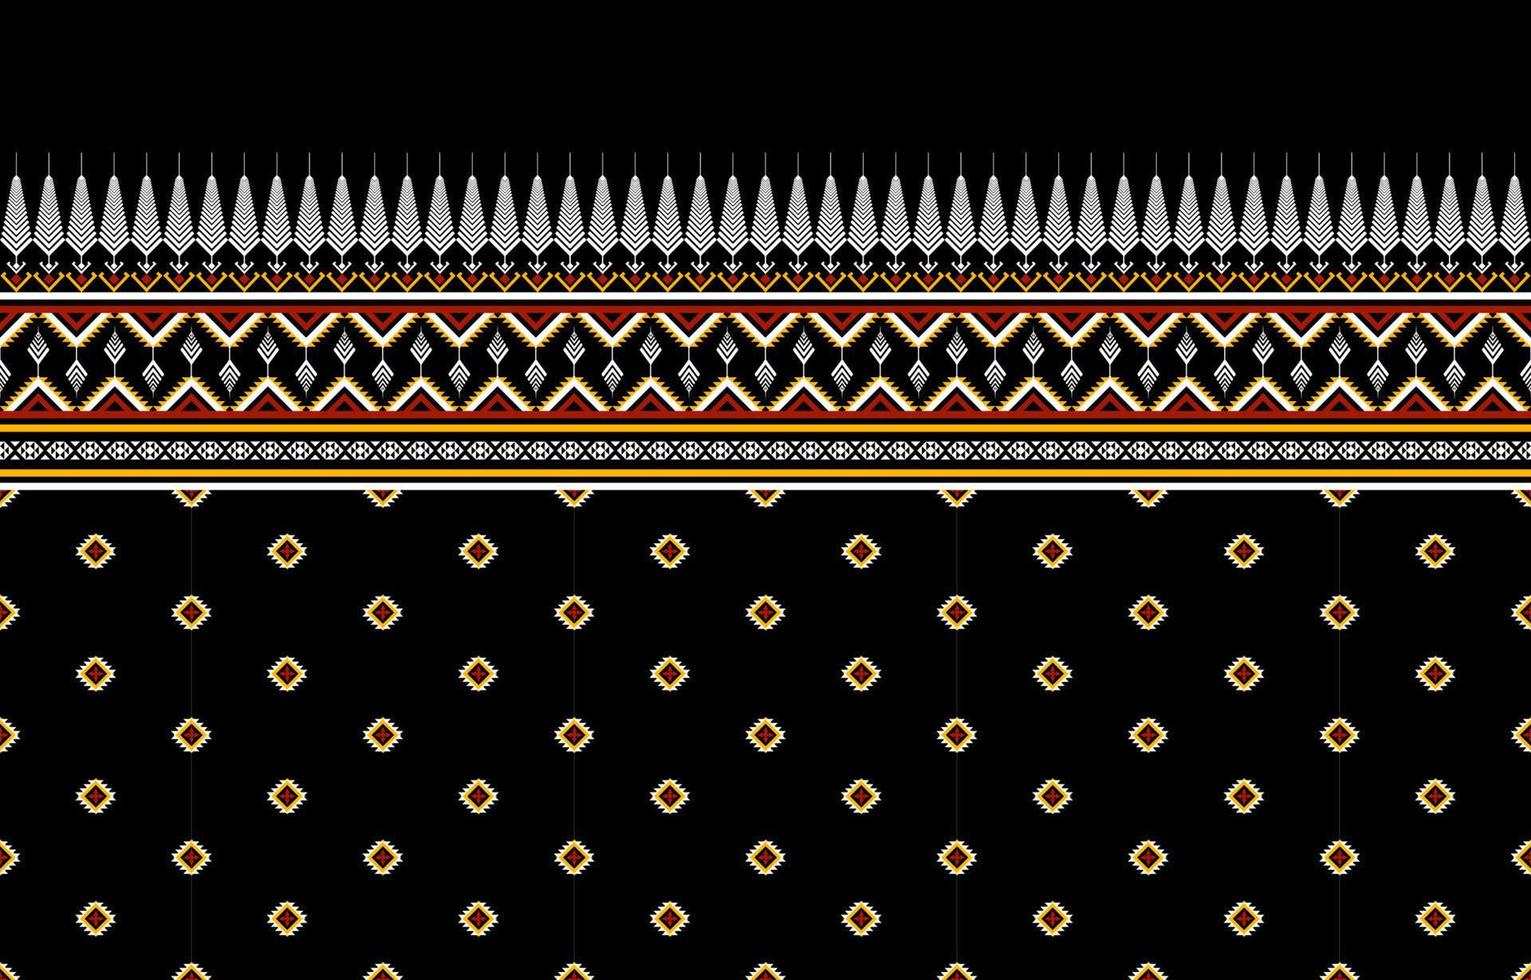 design tradicional de padrão étnico geométrico para plano de fundo,tapete,papel de parede,vestuário,embrulho,batik,tecido,sarong,ilustração,bordado,estilo. vetor